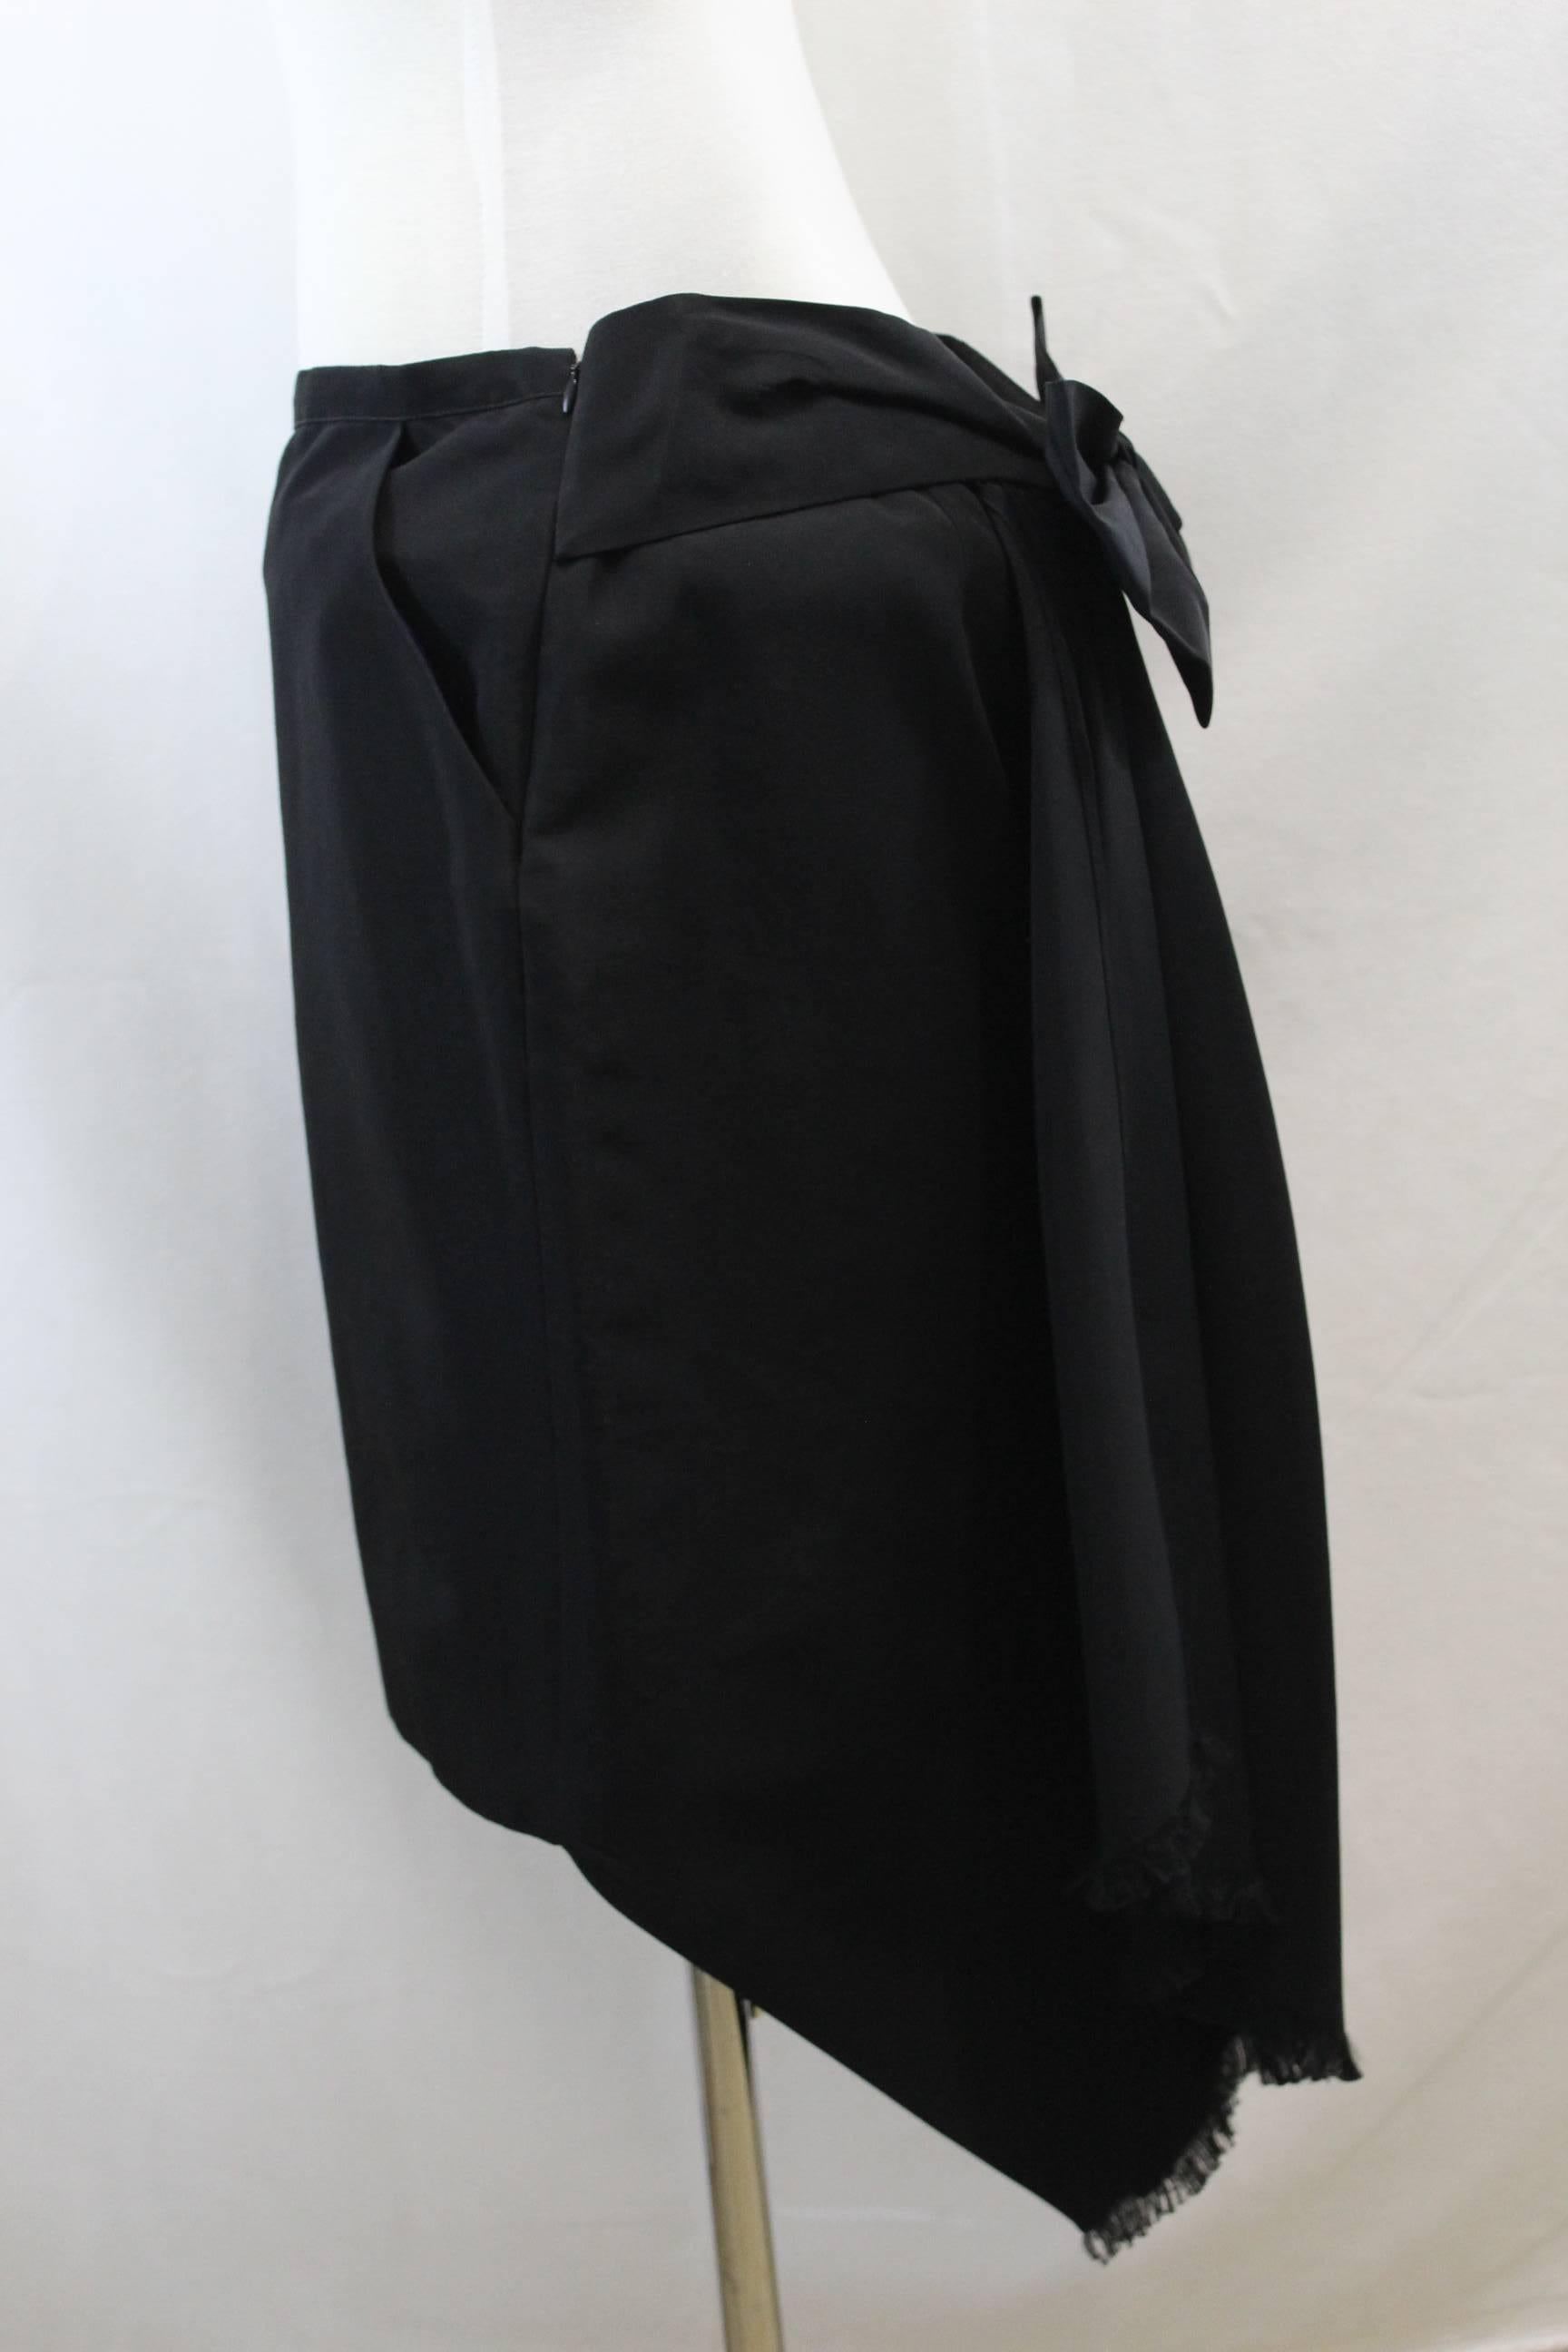 Black Jean Paul Gaultier Back Ribbon Skirt. Size 14 (44)